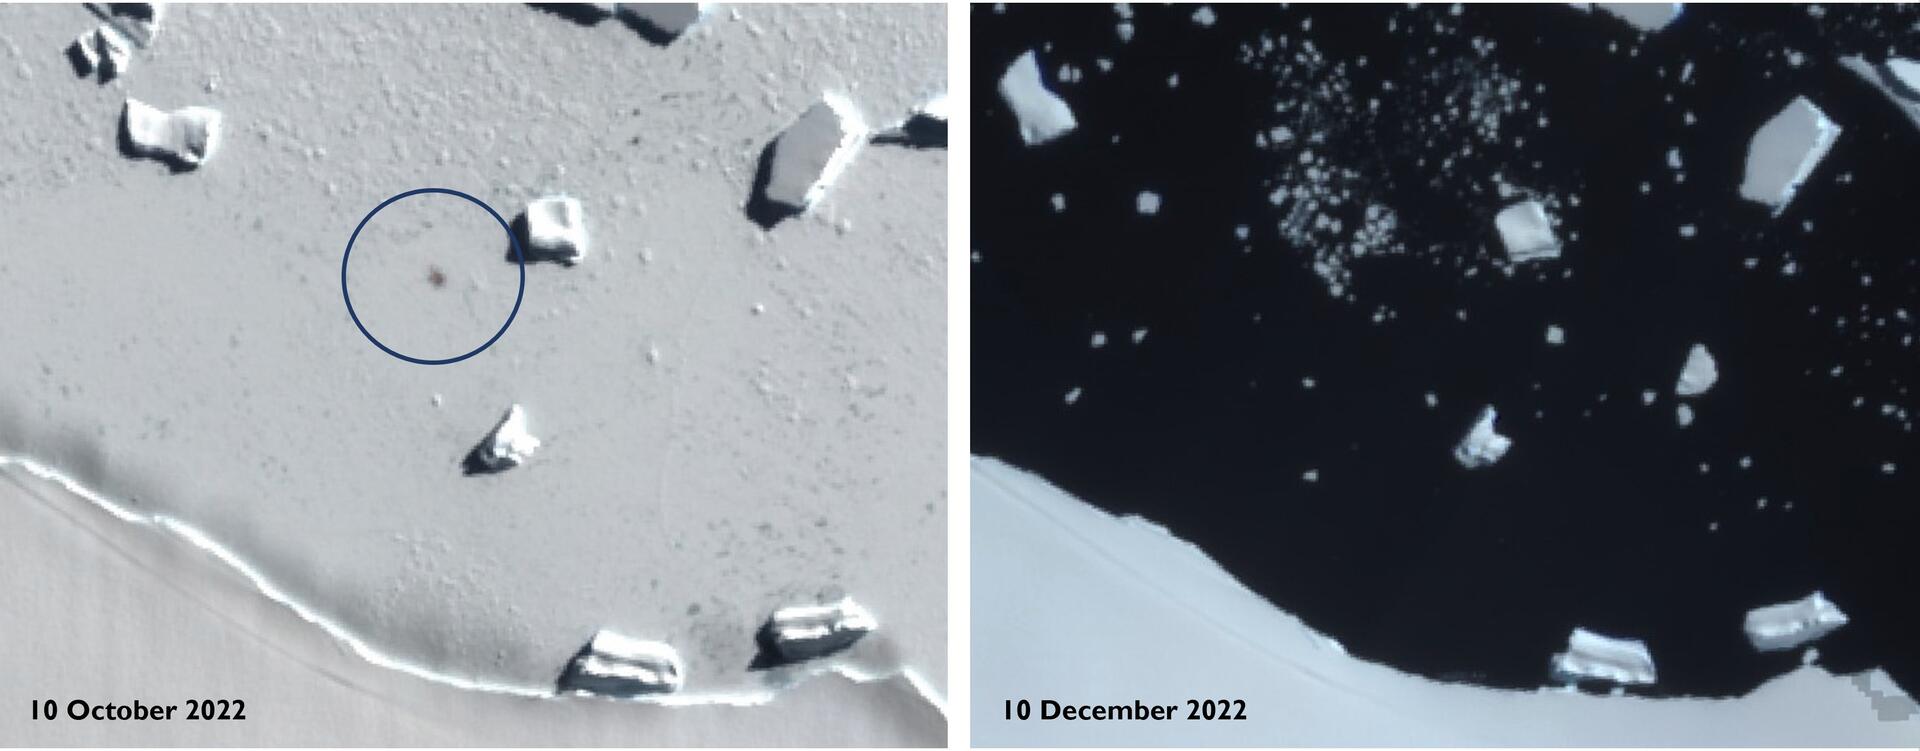 Satellitenbilder zeigen Smyley Island am 10. Oktober 2022 (l) und am 10. Dezember 2022. Der Kreis markiert den Standort einer Kaiserpinguin-Kolonie. Kaiserpinguine leiden einer Analyse zufolge massiv unter dem Verschwinden von Meereis in der Antarktis.